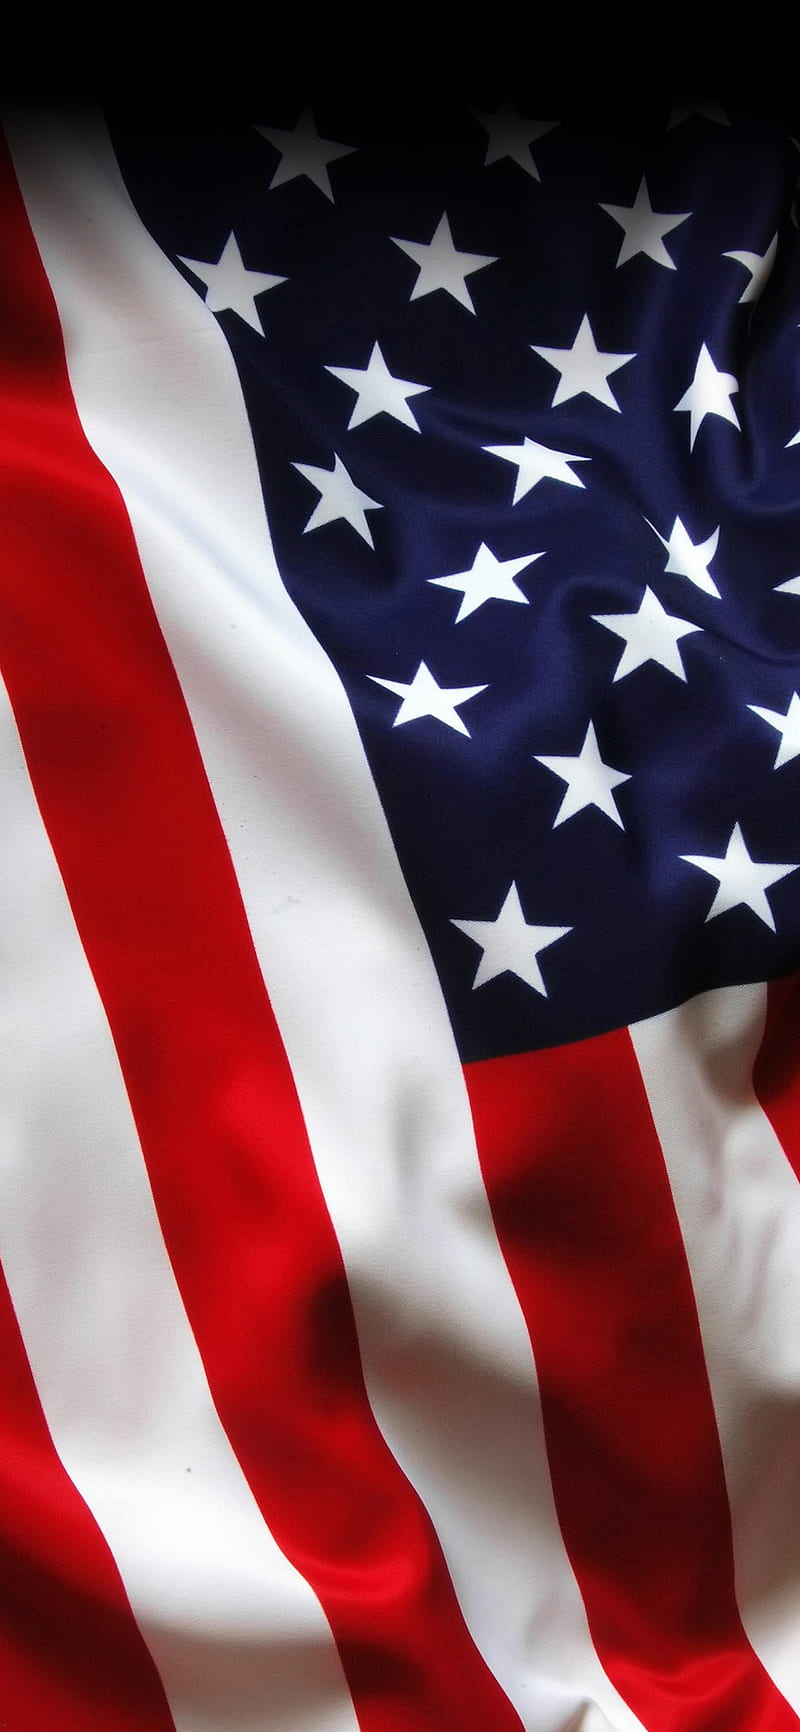 Để giữ vẻ đẹp sang trọng của chiếc điện thoại X của bạn, hãy chọn hình nền Lá cờ nước Mỹ để tạo nên ấn tượng mạnh mẽ và đầy tình yêu quê hương. Nhấn vào để xem thêm hình nền Lá cờ Mỹ. 